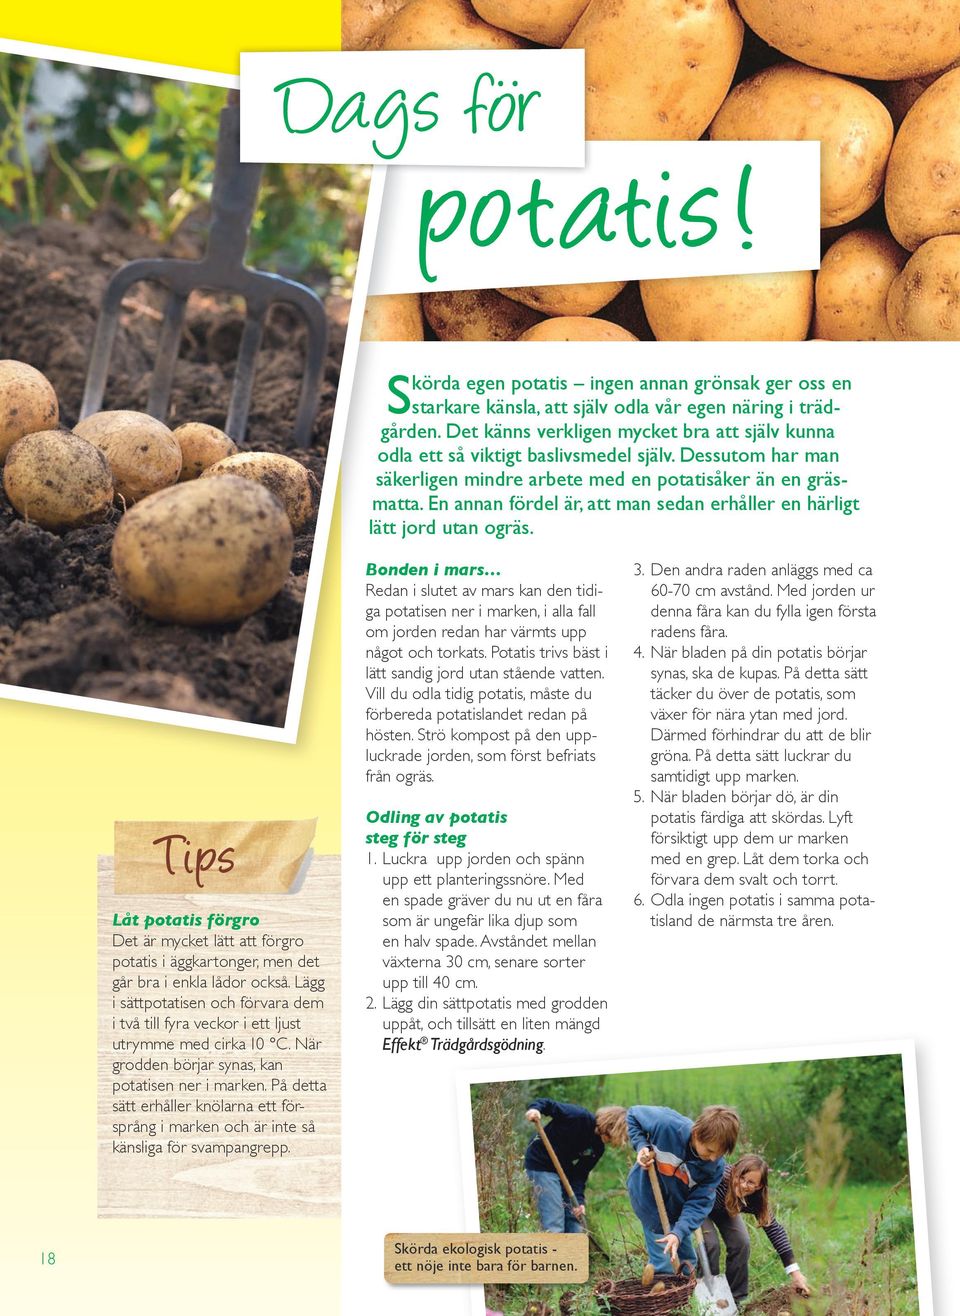 En annan fördel är, att man sedan erhåller en härligt lätt jord utan ogräs. Tips Låt potatis förgro Det är mycket lätt att förgro potatis i äggkartonger, men det går bra i enkla lådor också.